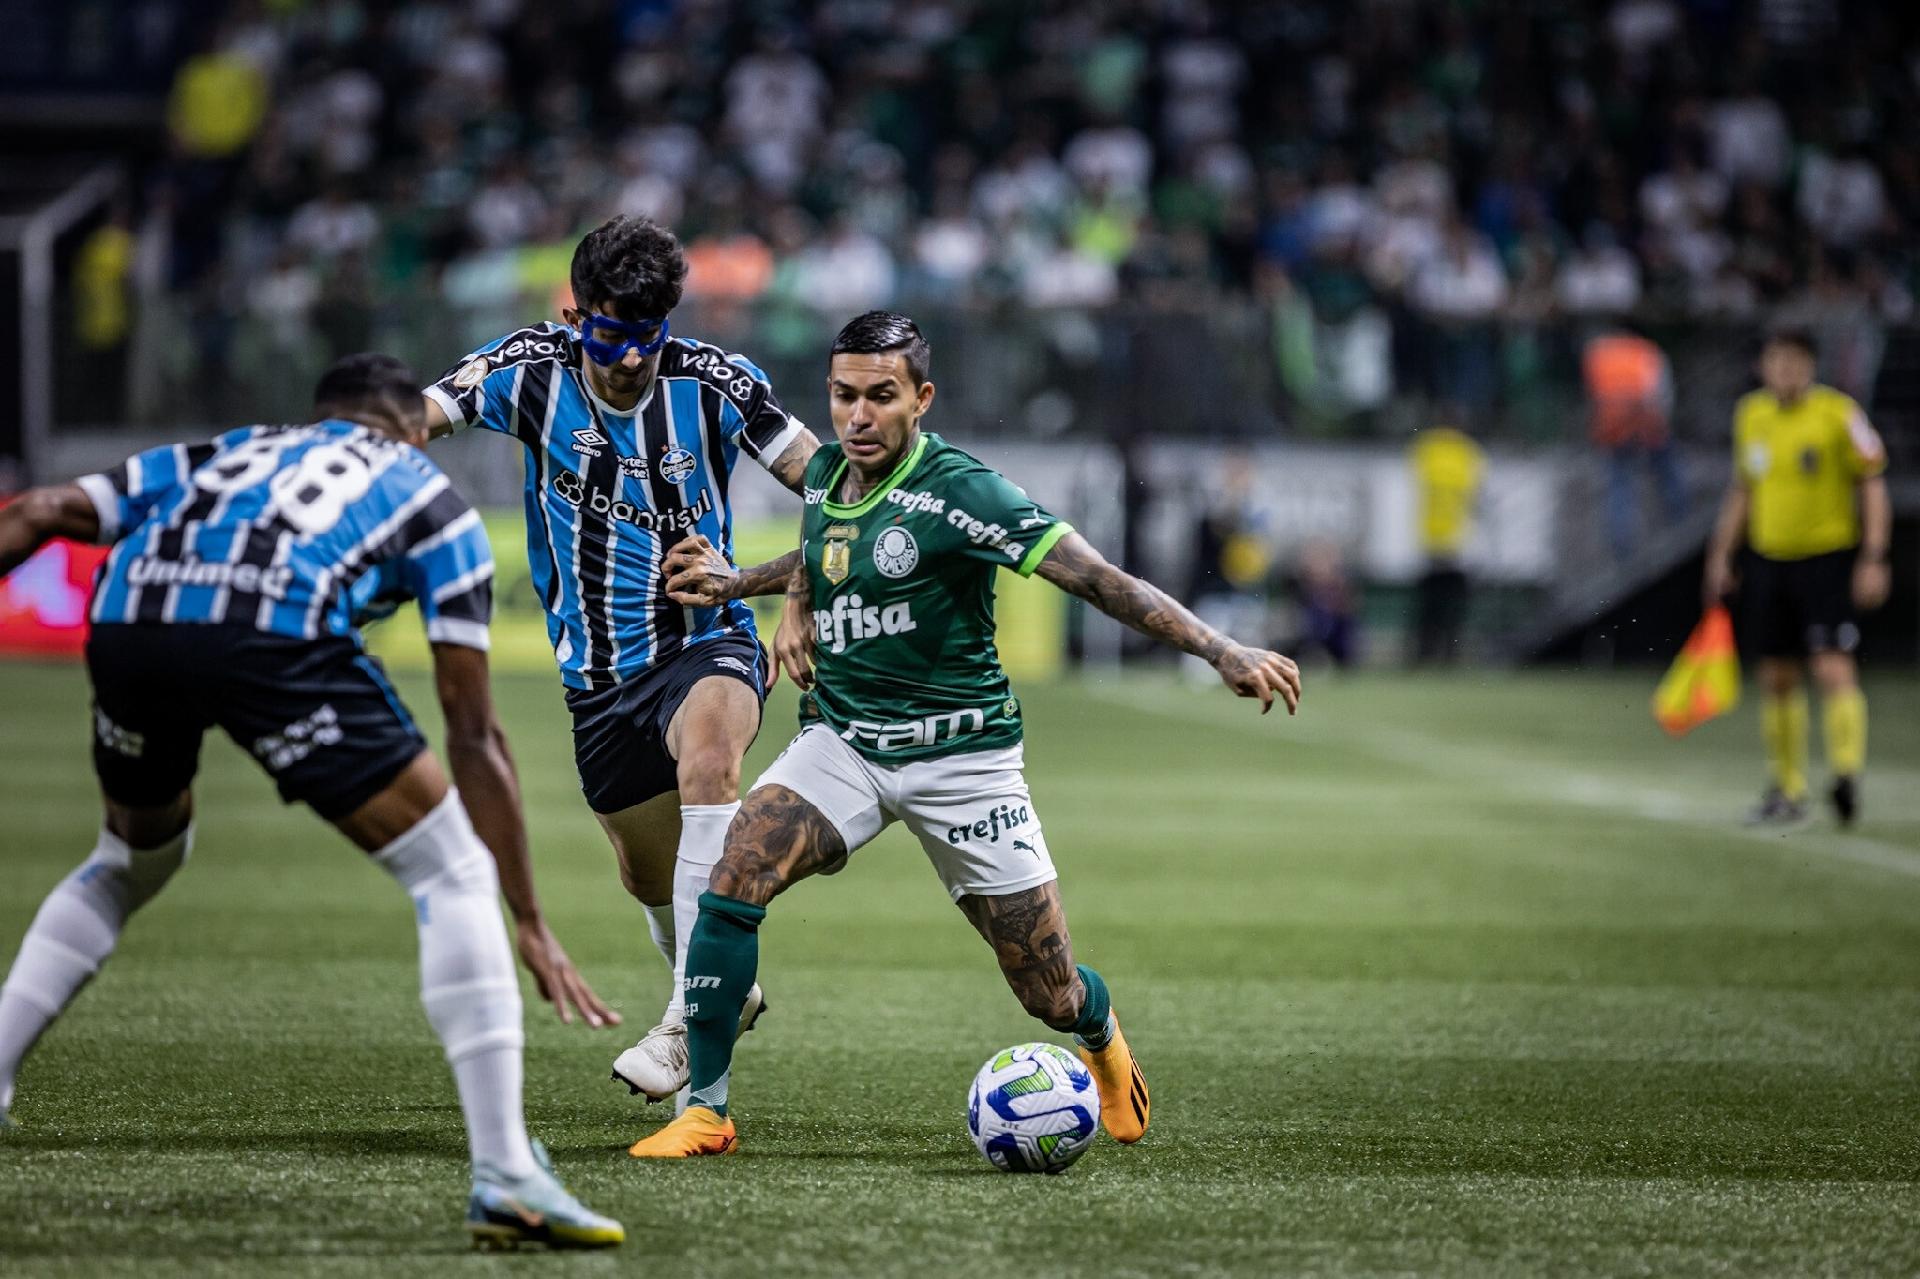 Palmeiras vs Tombense: A Clash of Titans in Brazilian Football